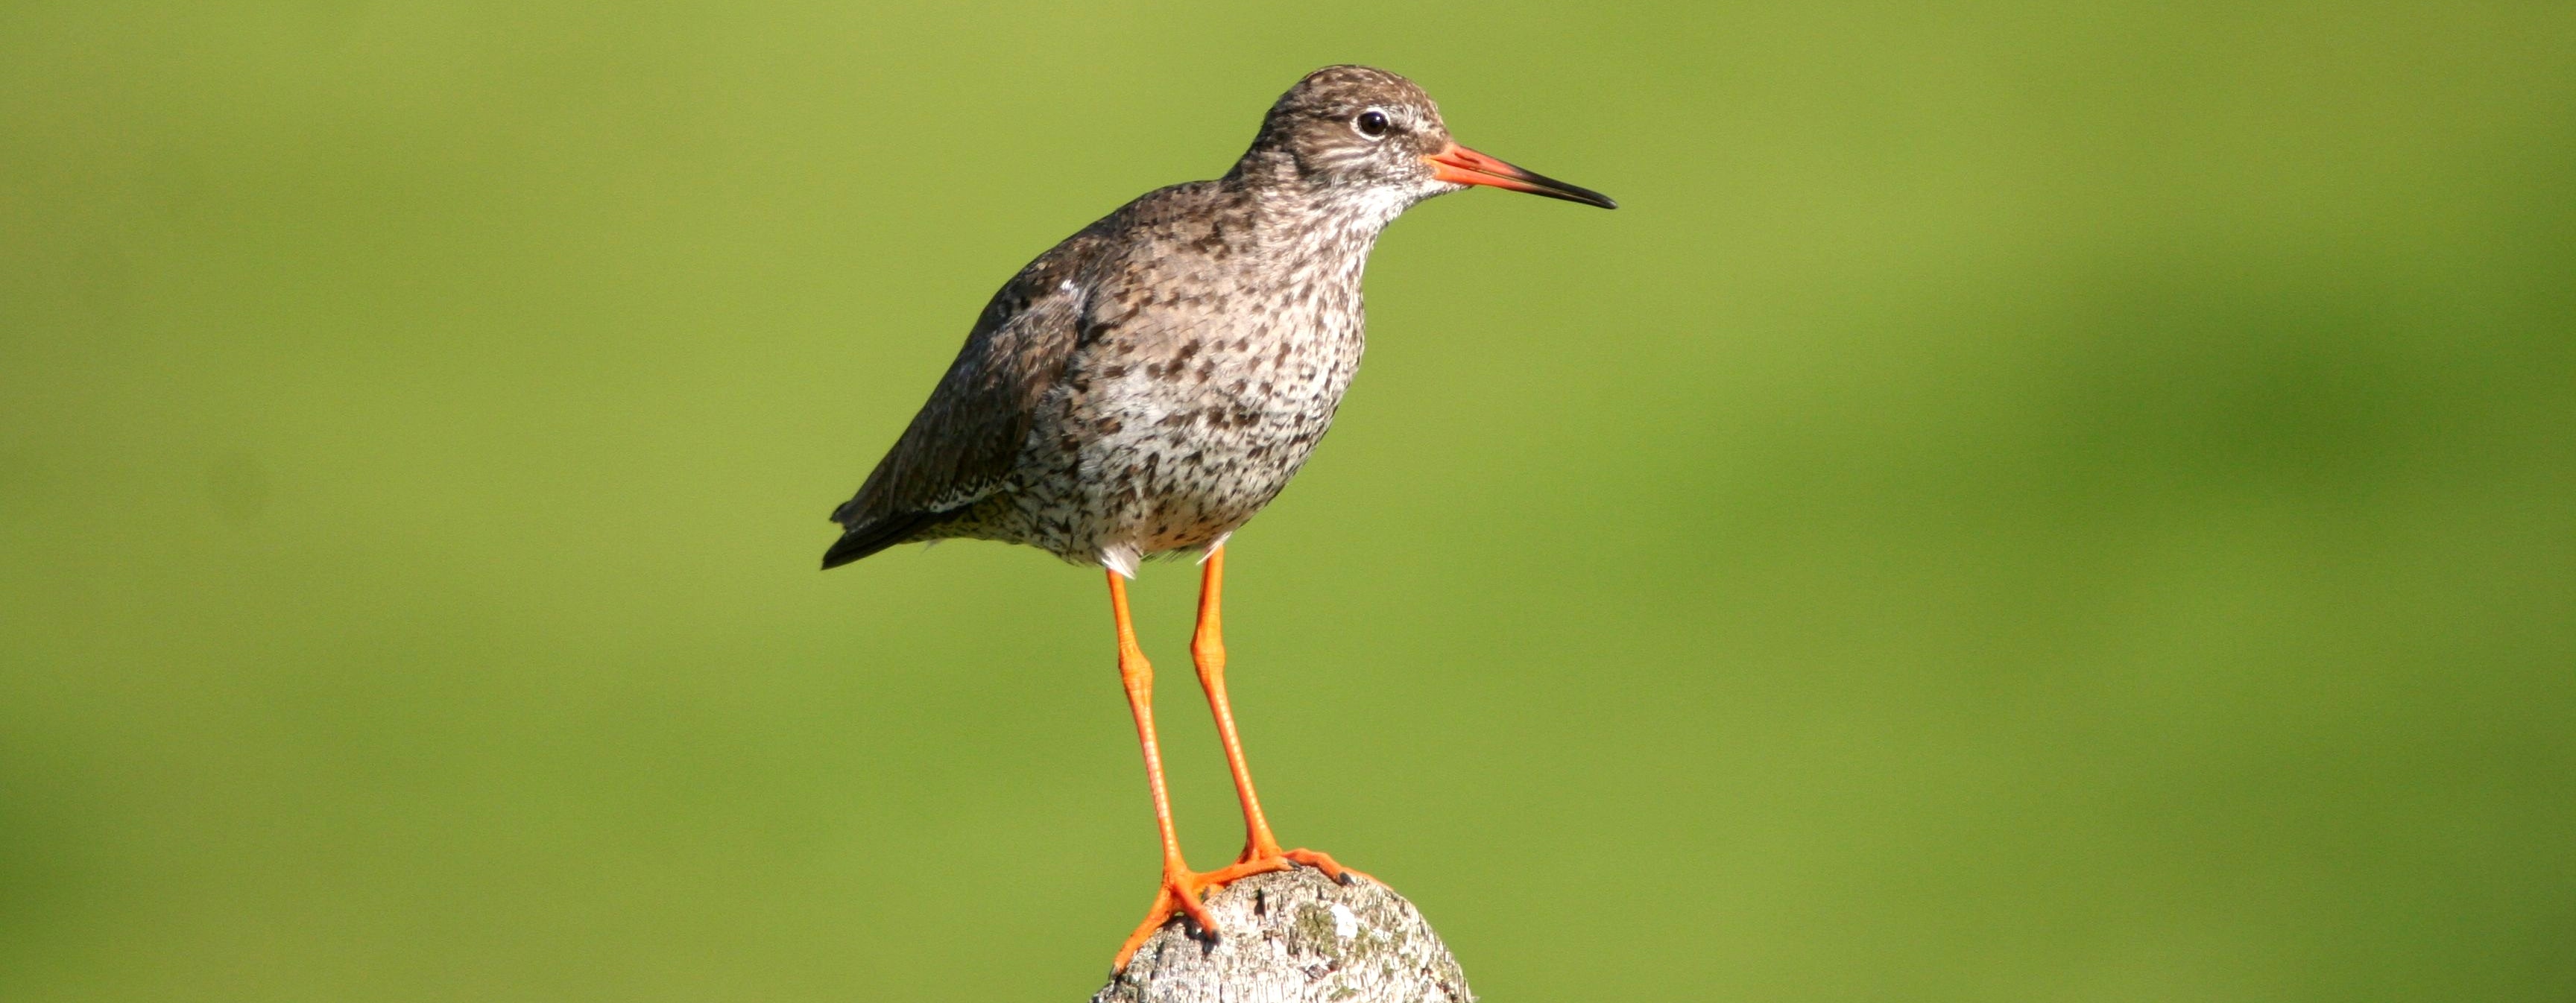 Na polních rozlivech okolo Lanžhota začíná ptačí sezóna